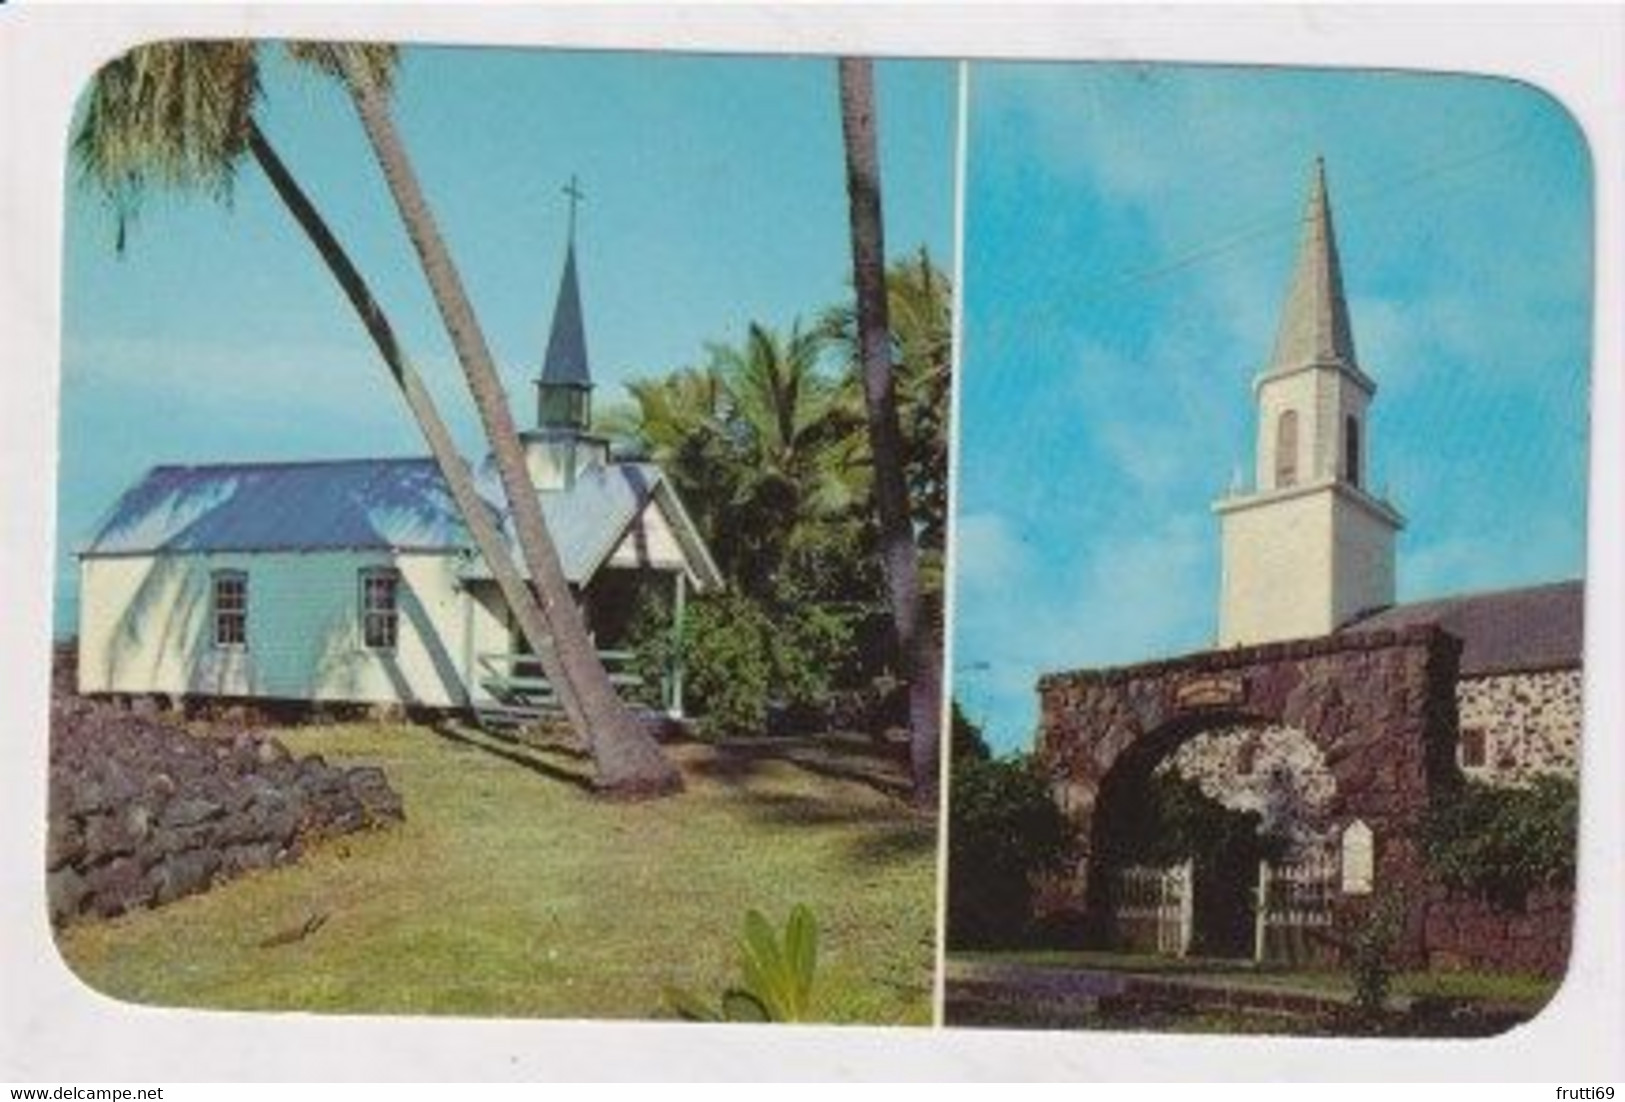 AK 033890 USA - Hawaii - Kailua-Kona - Churches Of Iona & St. Peter's-by-the-Sea - Big Island Of Hawaii